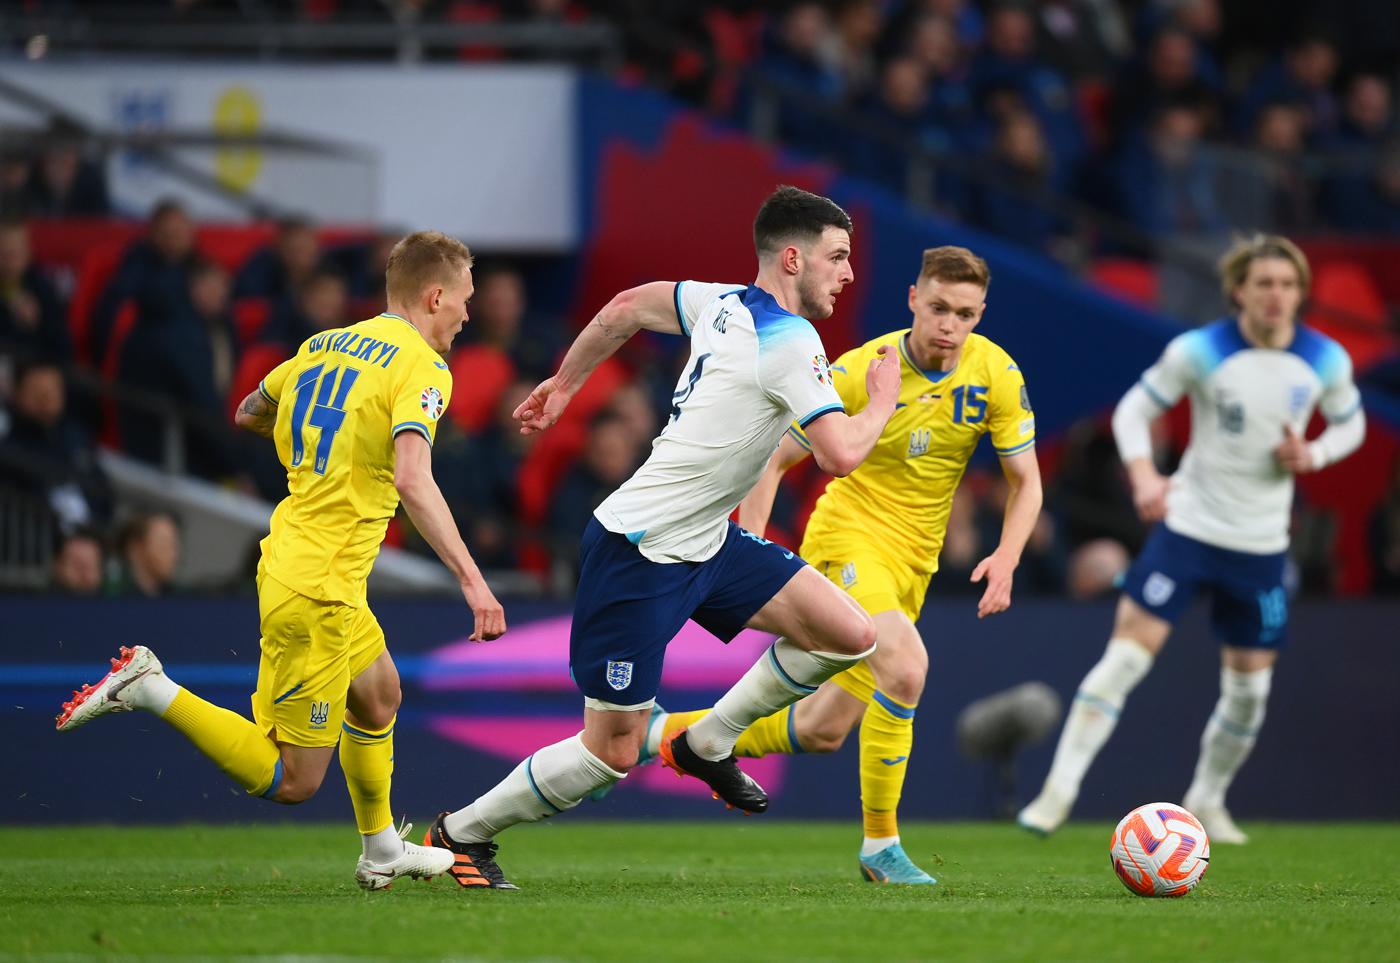 England v Ukraine - 2-0. Euro 2024. Match review, statistics (March 26, 2023) — dynamo.kiev.ua